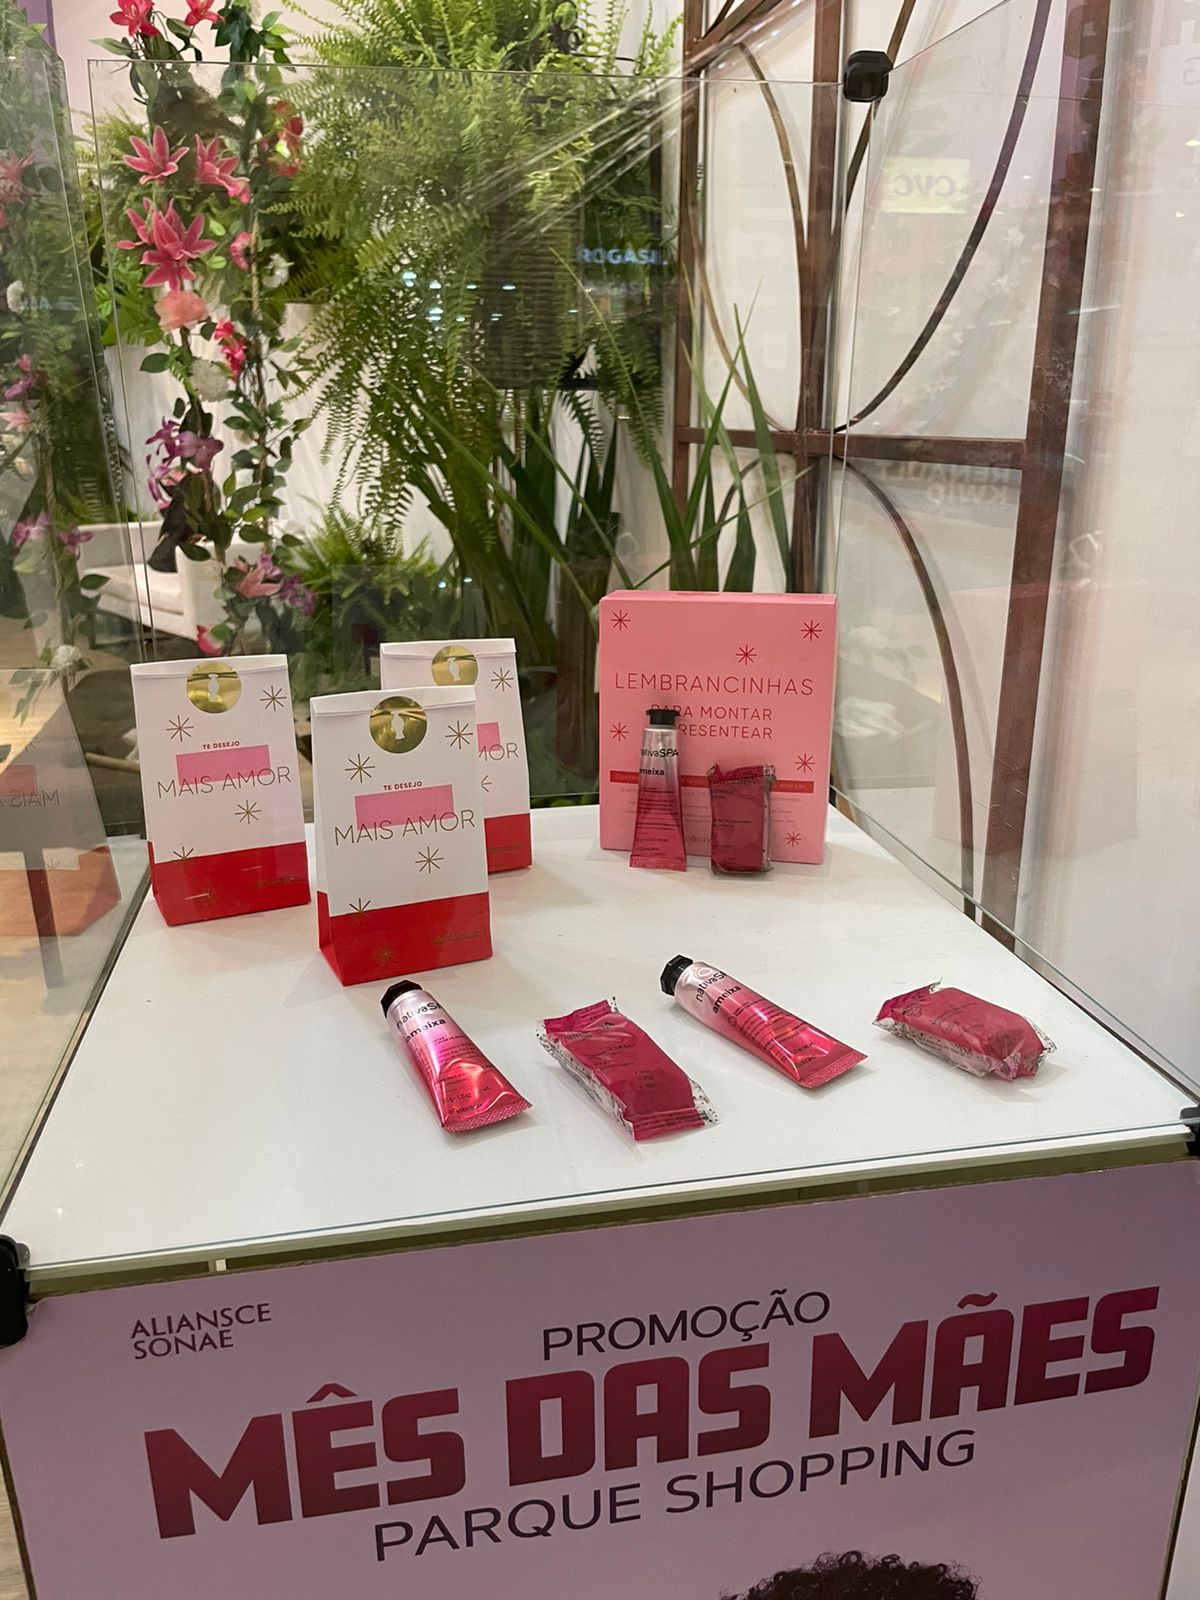 Mês das Mães: Parque Shopping dará kits O Boticário de presente em promoção especial